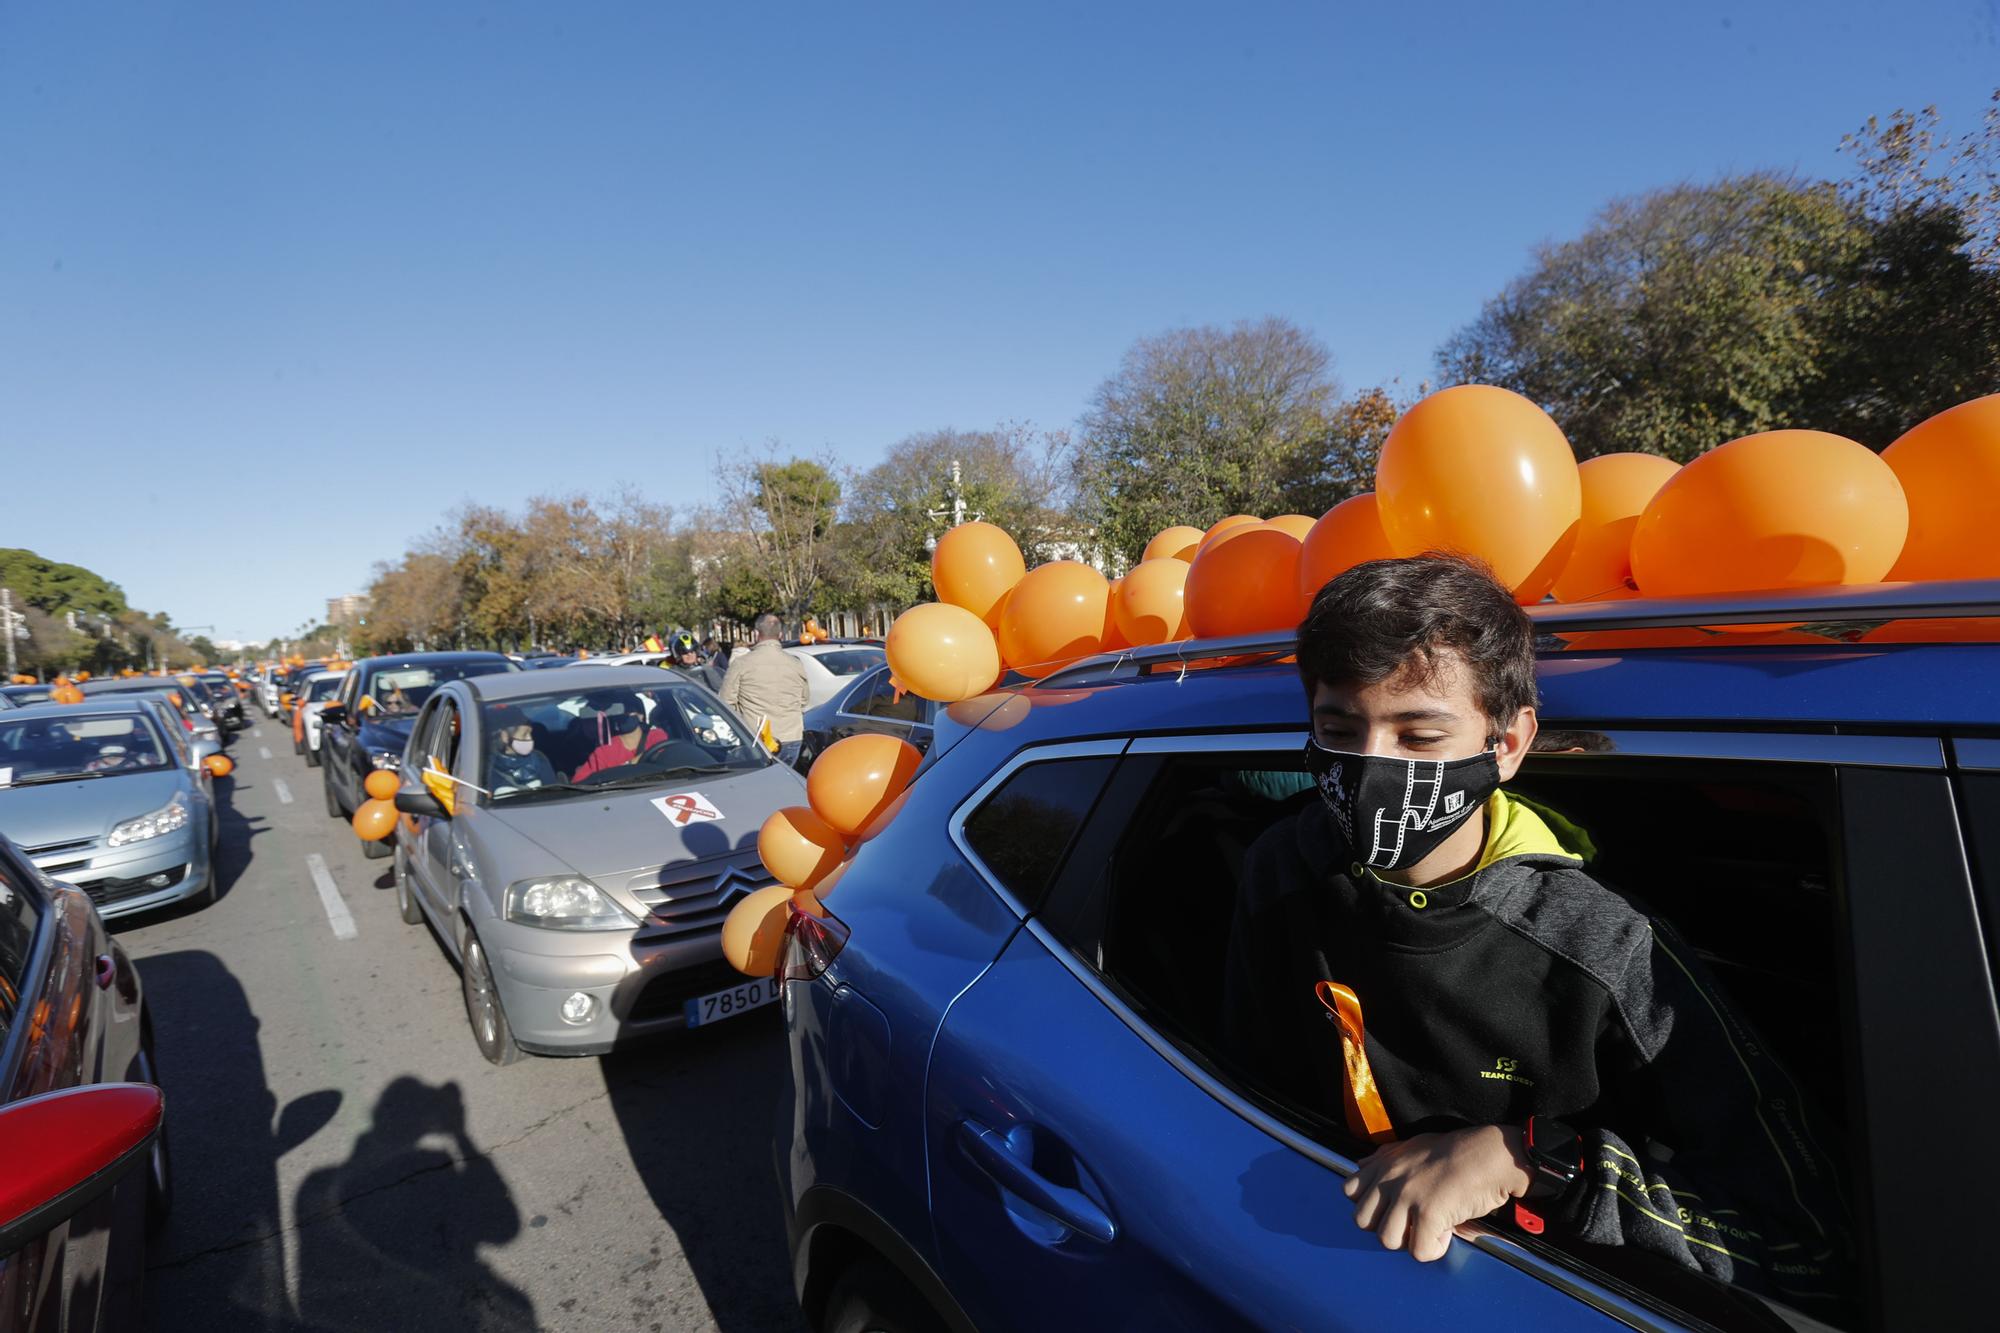 Caravana de vehículos en protesta por el Ley Celaá en València